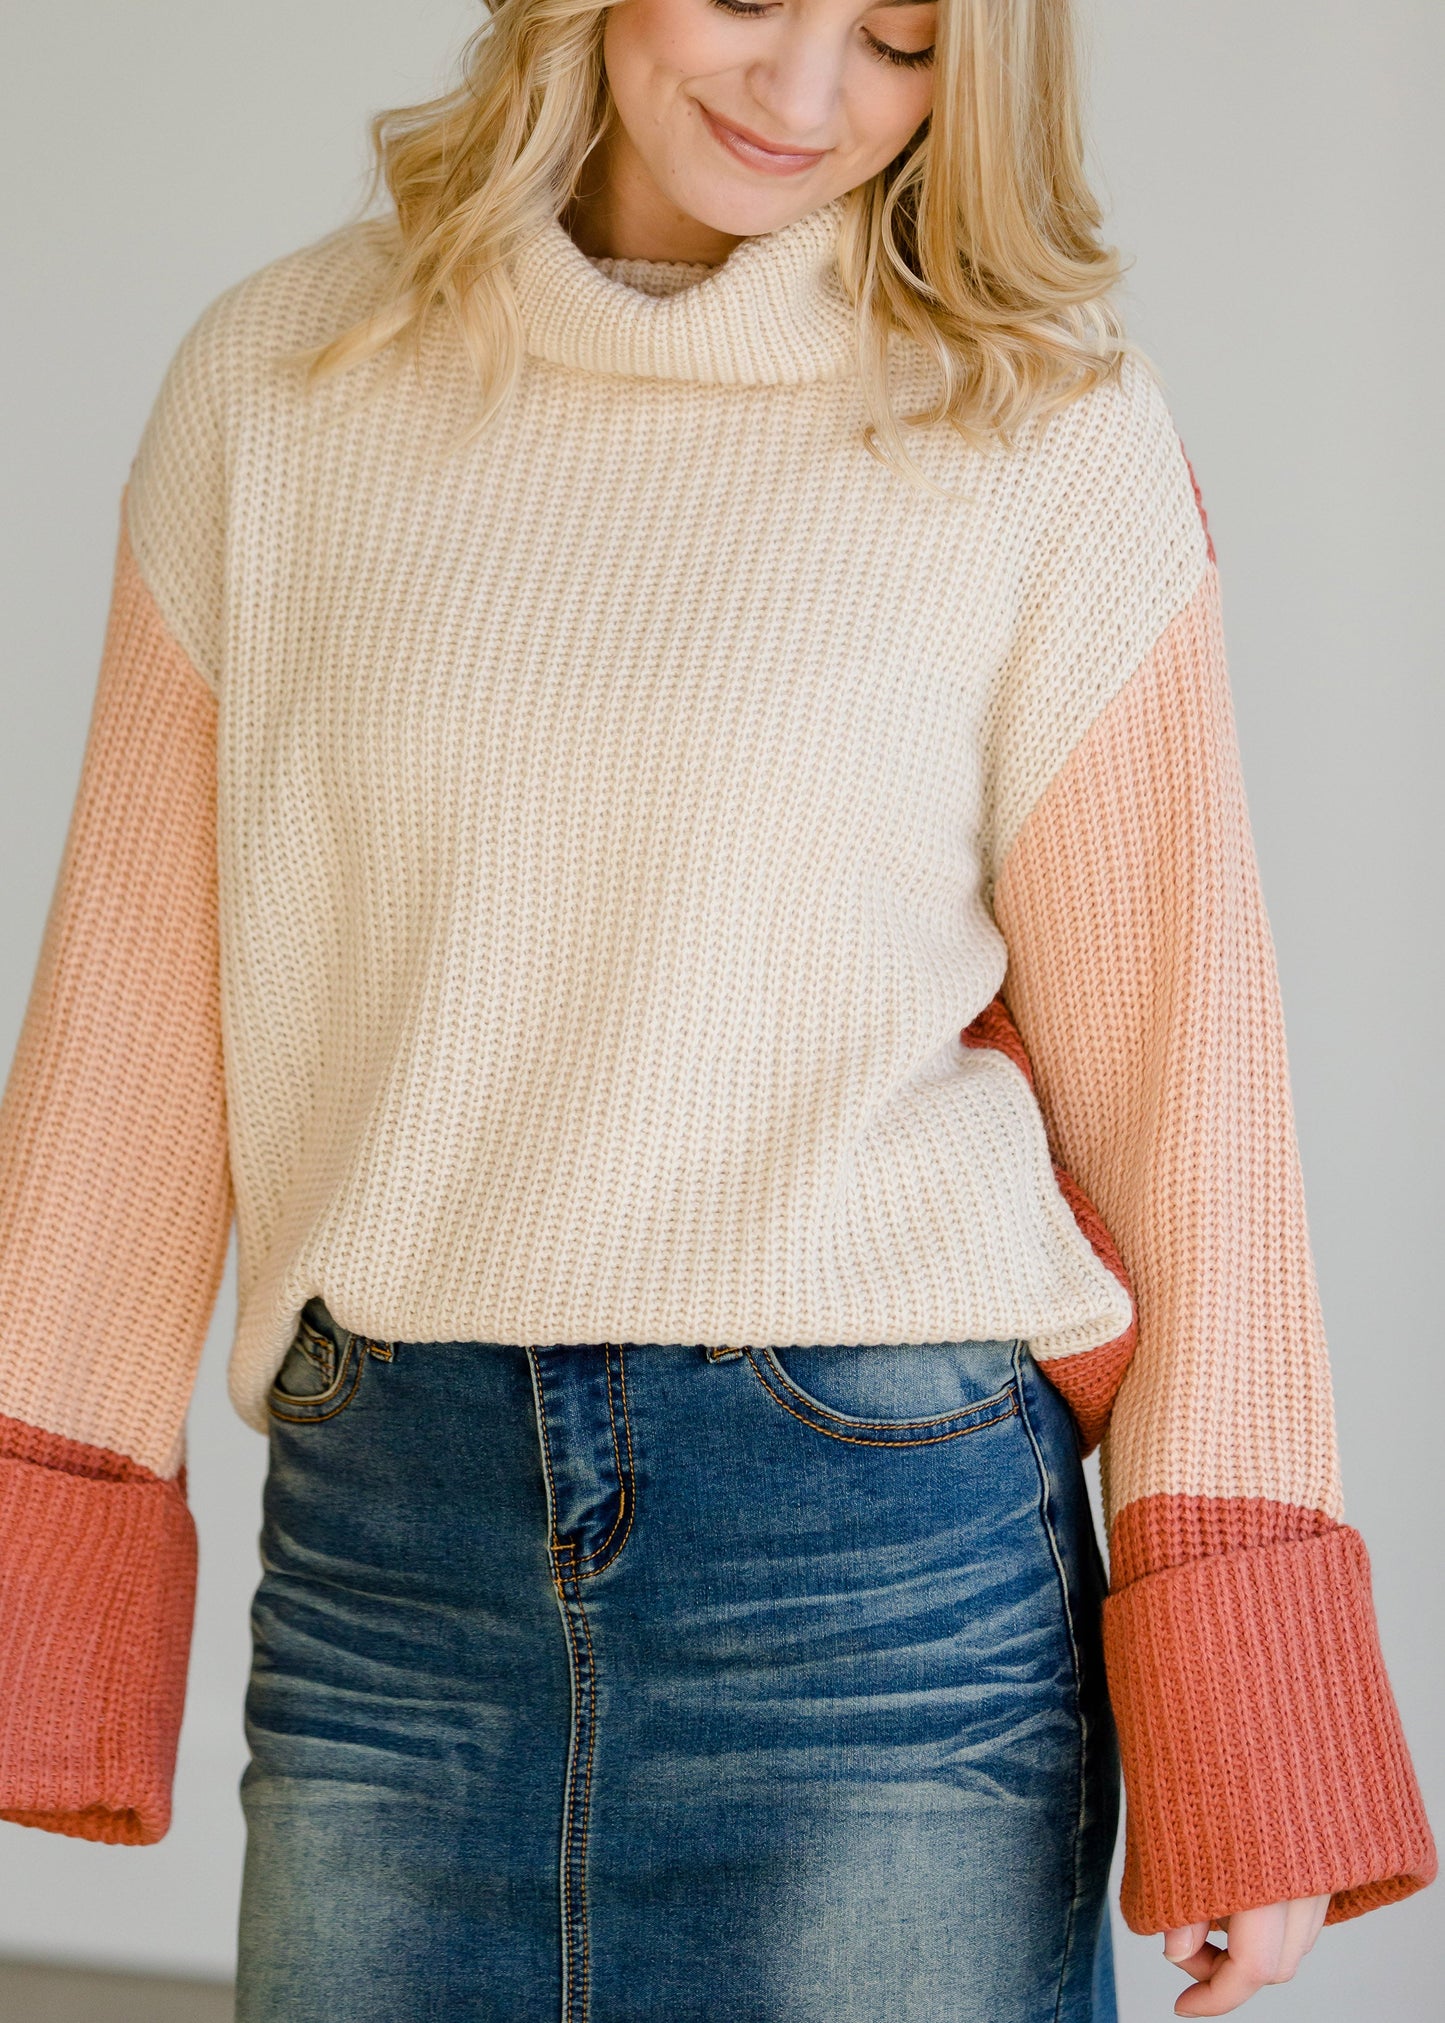 Multi Color Turtleneck Sweater - FINAL SALE Tops